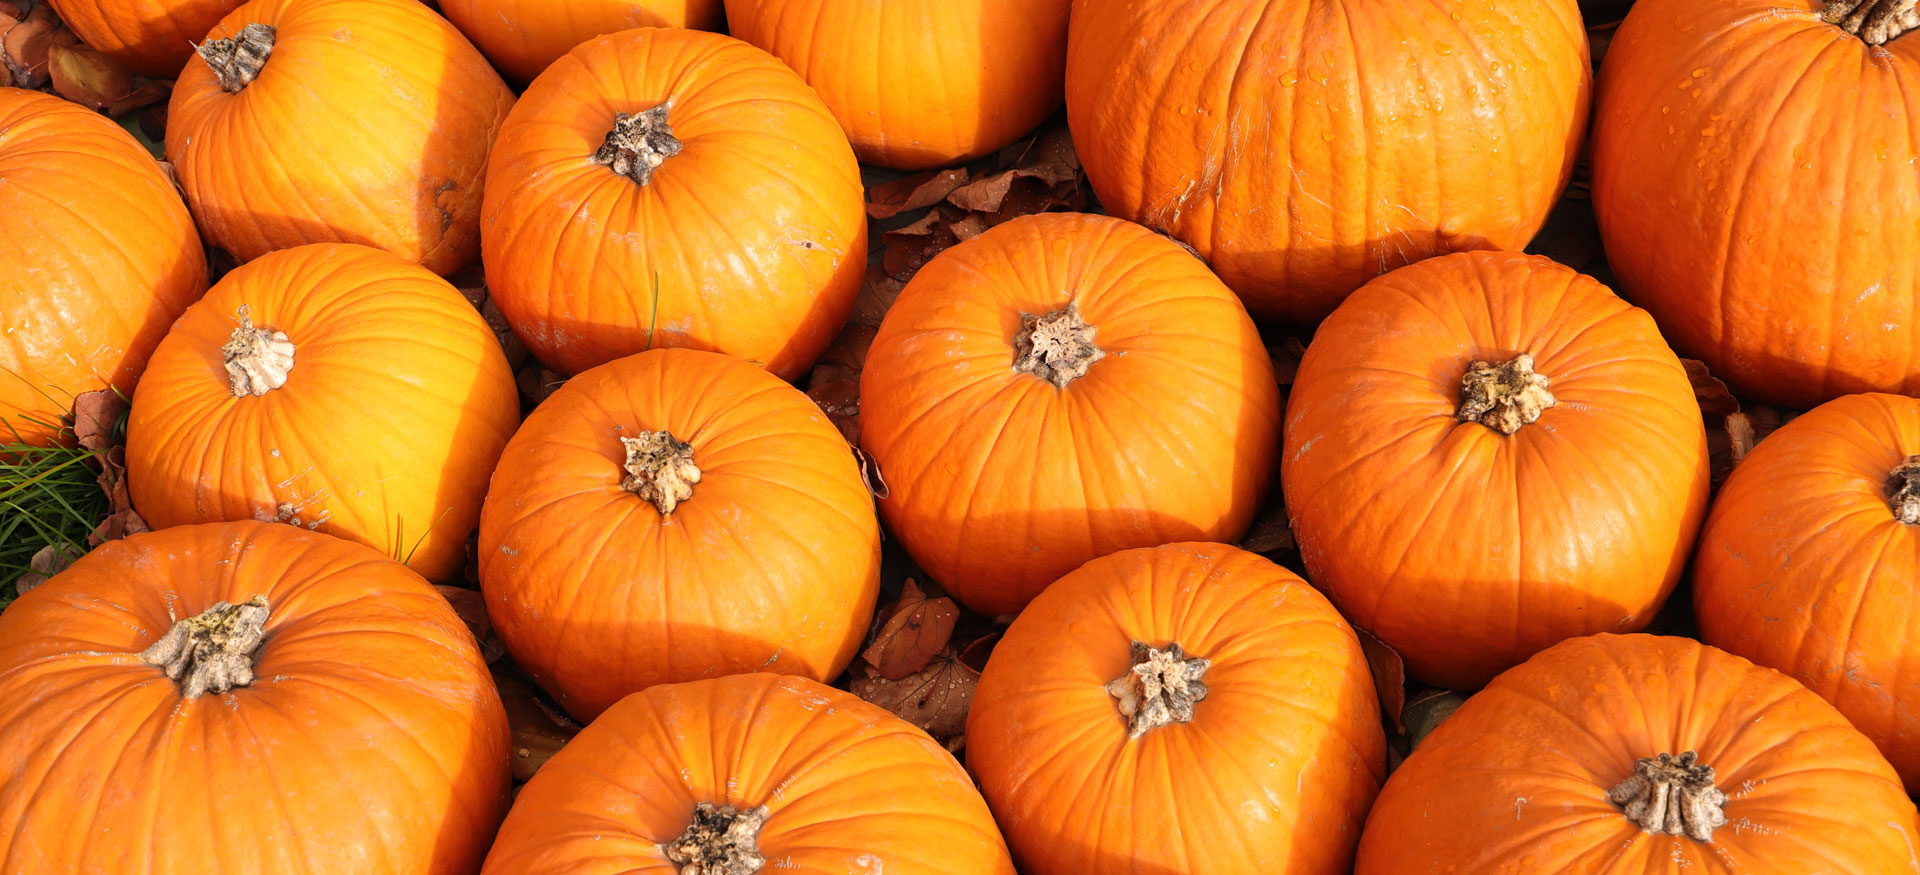 Fall lovers rejoice: Pumpkin season is here!